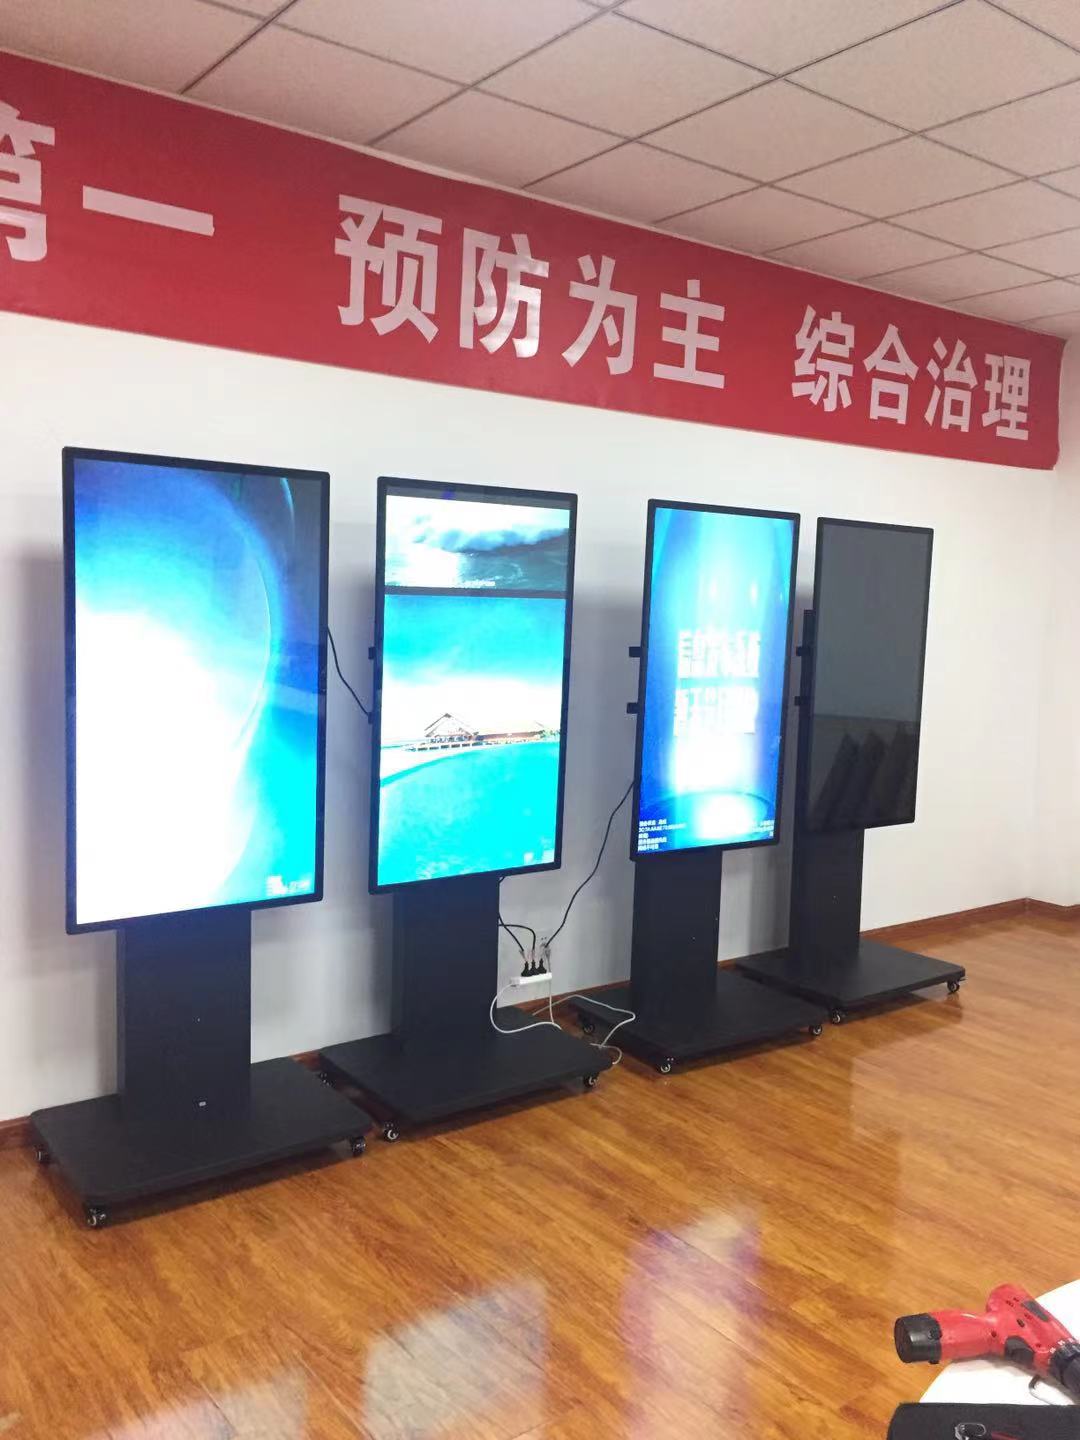 案例展示：天津港某企业会议室和食堂应用我司一体机信息发布系统